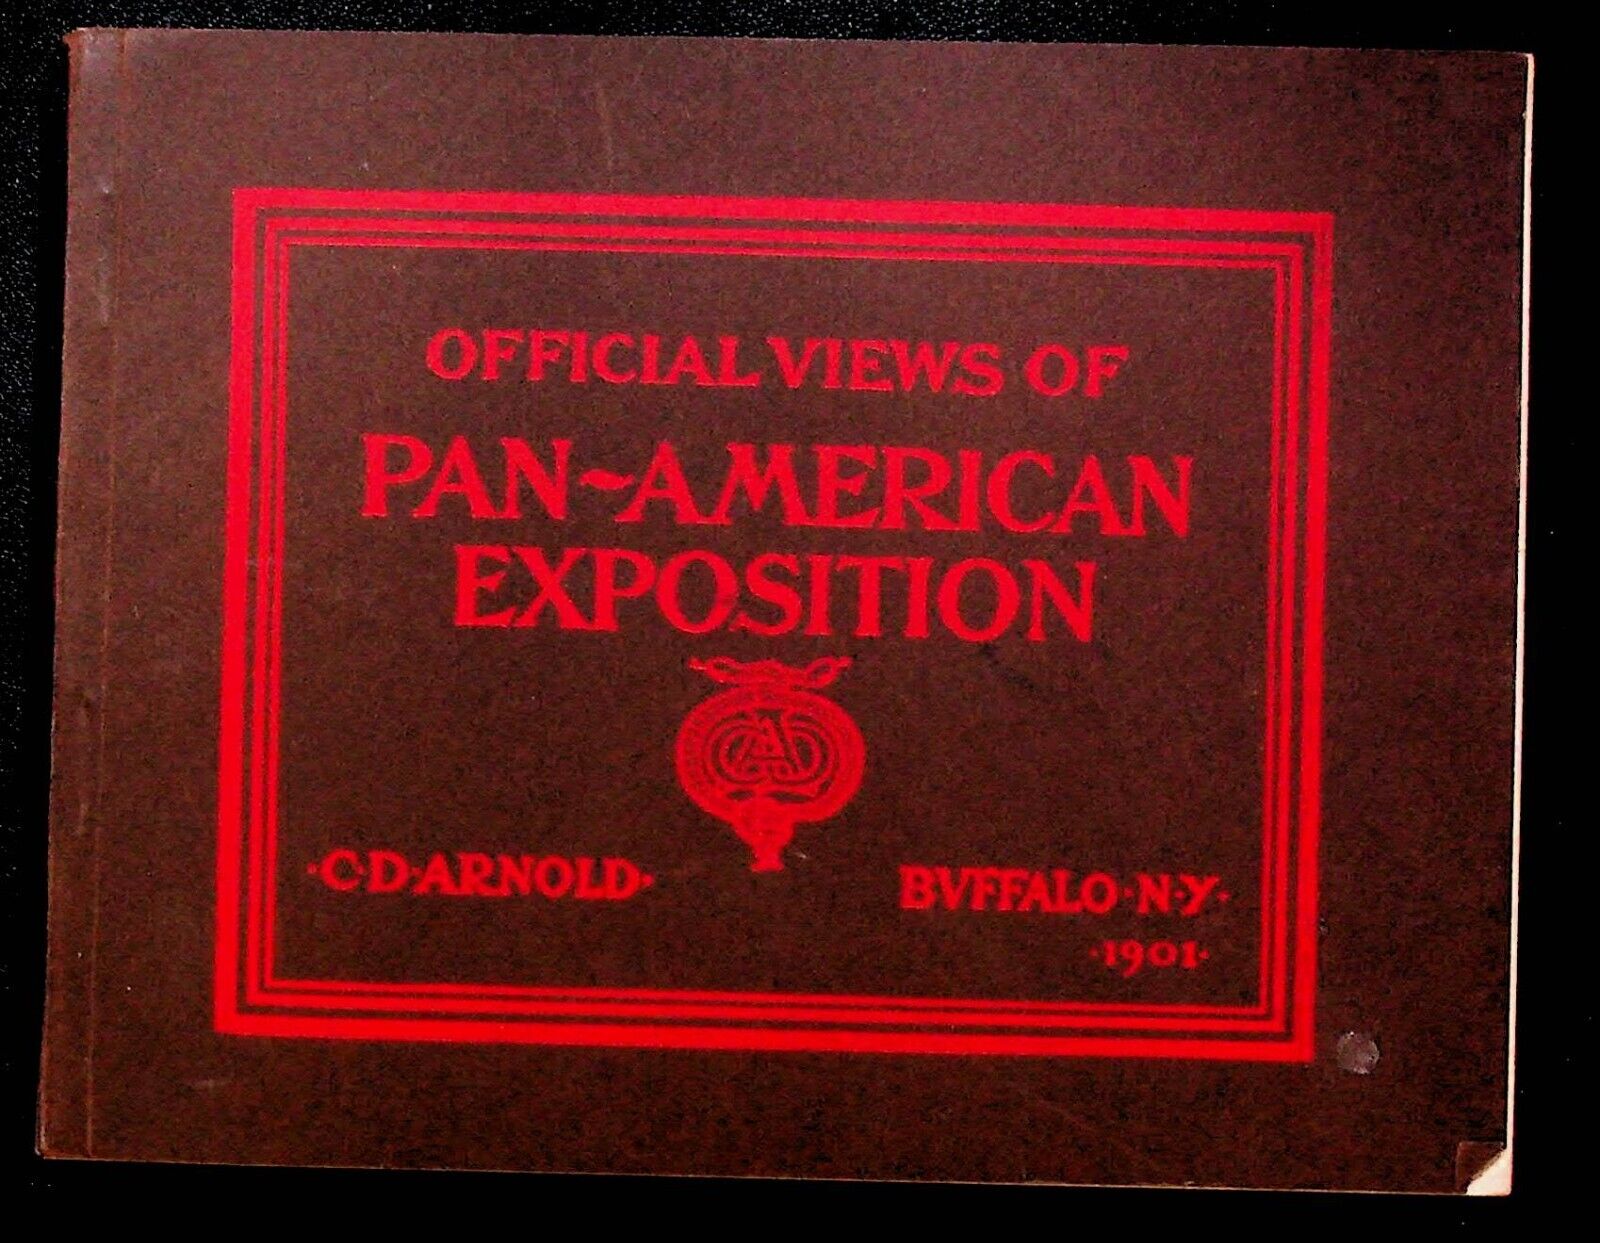 1901 Pan-American Exposition Book Buffalo, NY EXPO photo book